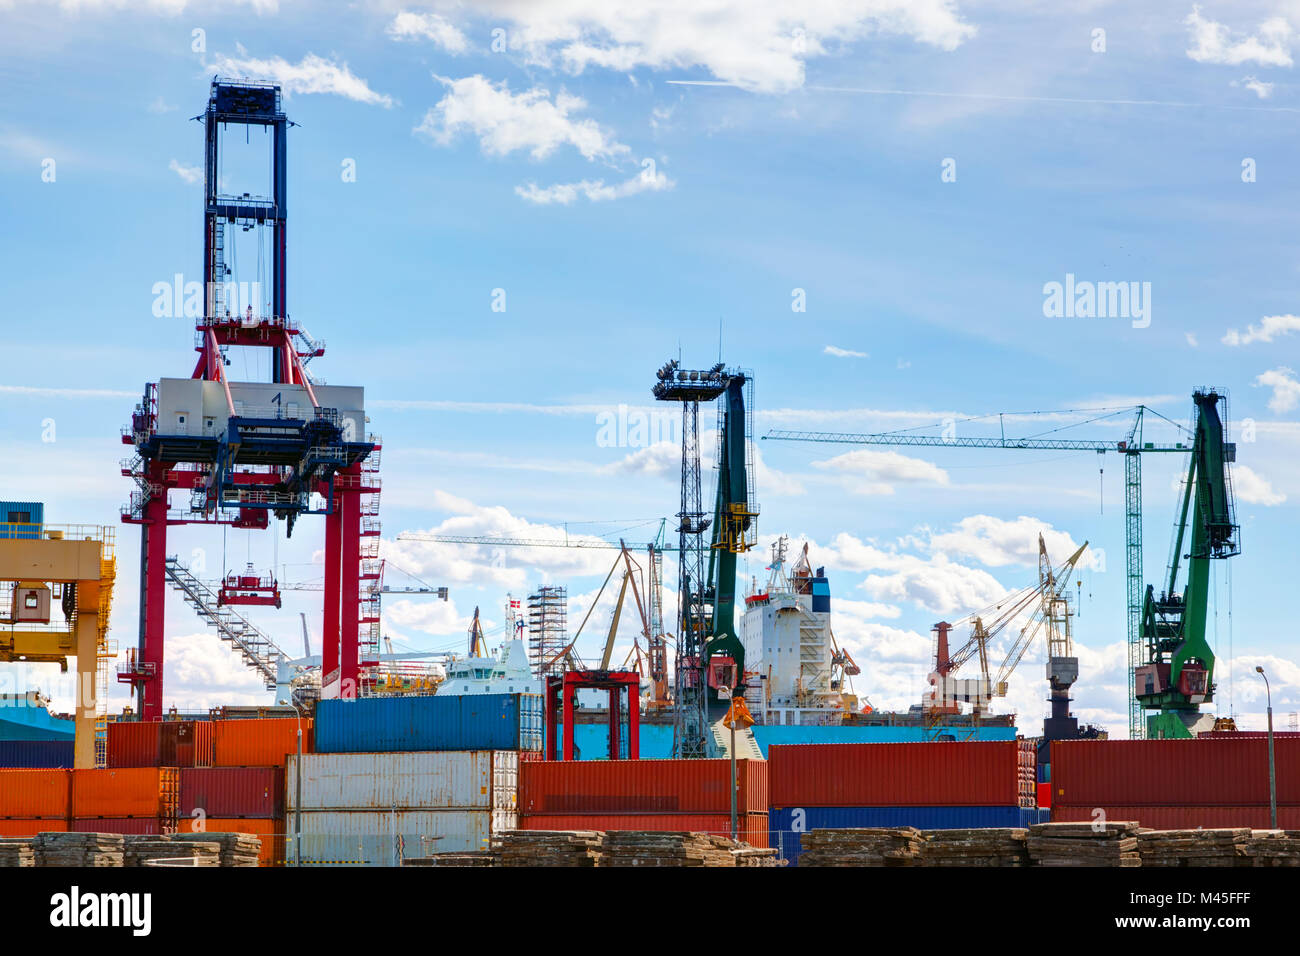 Cantiere navale. Nave in costruzione, riparazione. Industriale e dei trasporti. Foto Stock